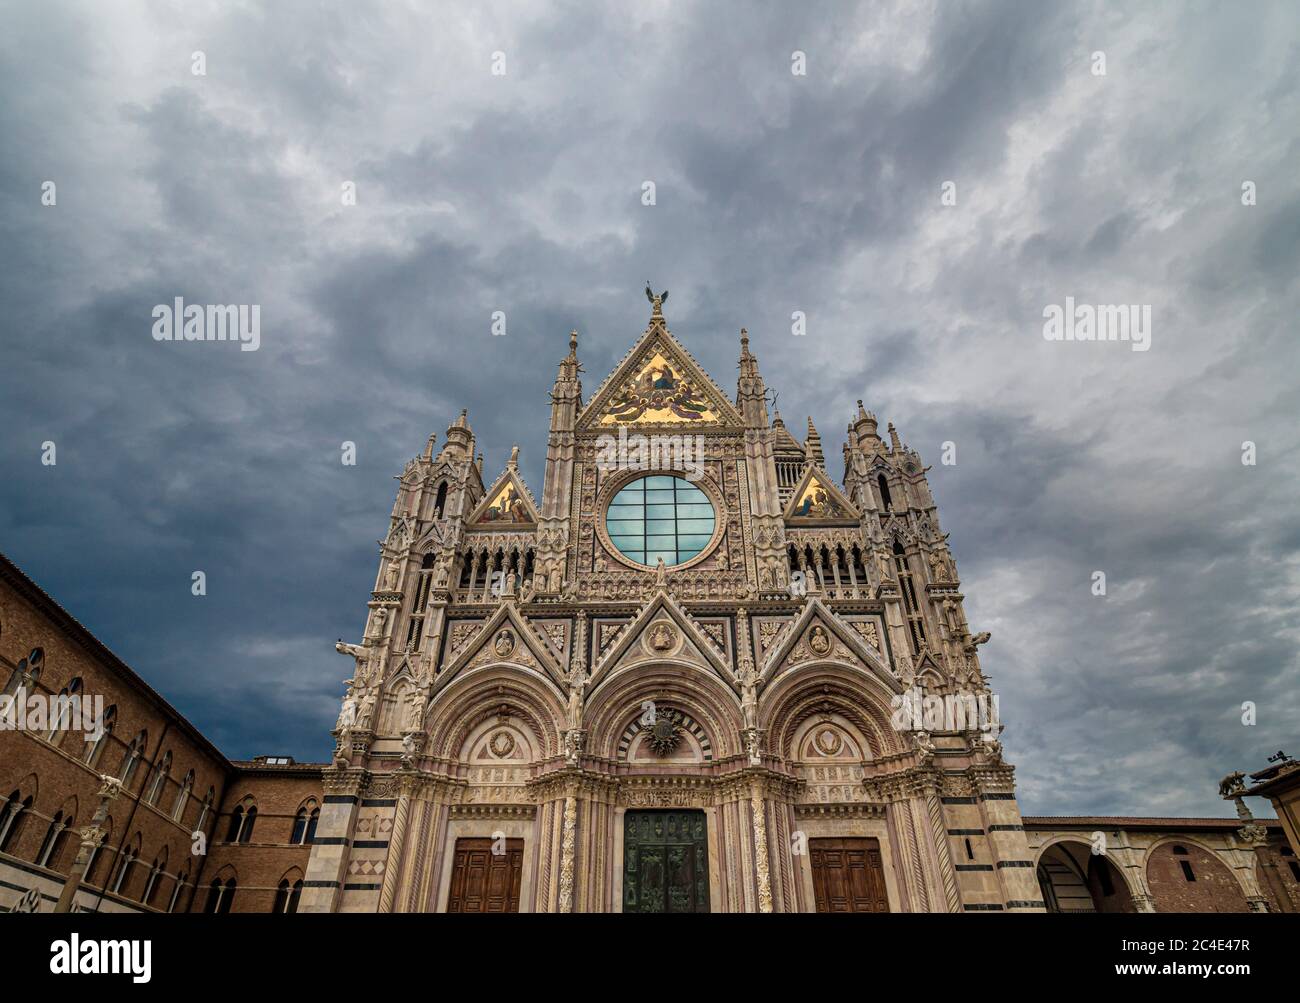 Finestra circolare anteriore ovest i 3 tessere dorati mosaicati del fronte sud ovest della Cattedrale di Siena. Siena, Italia. Foto Stock